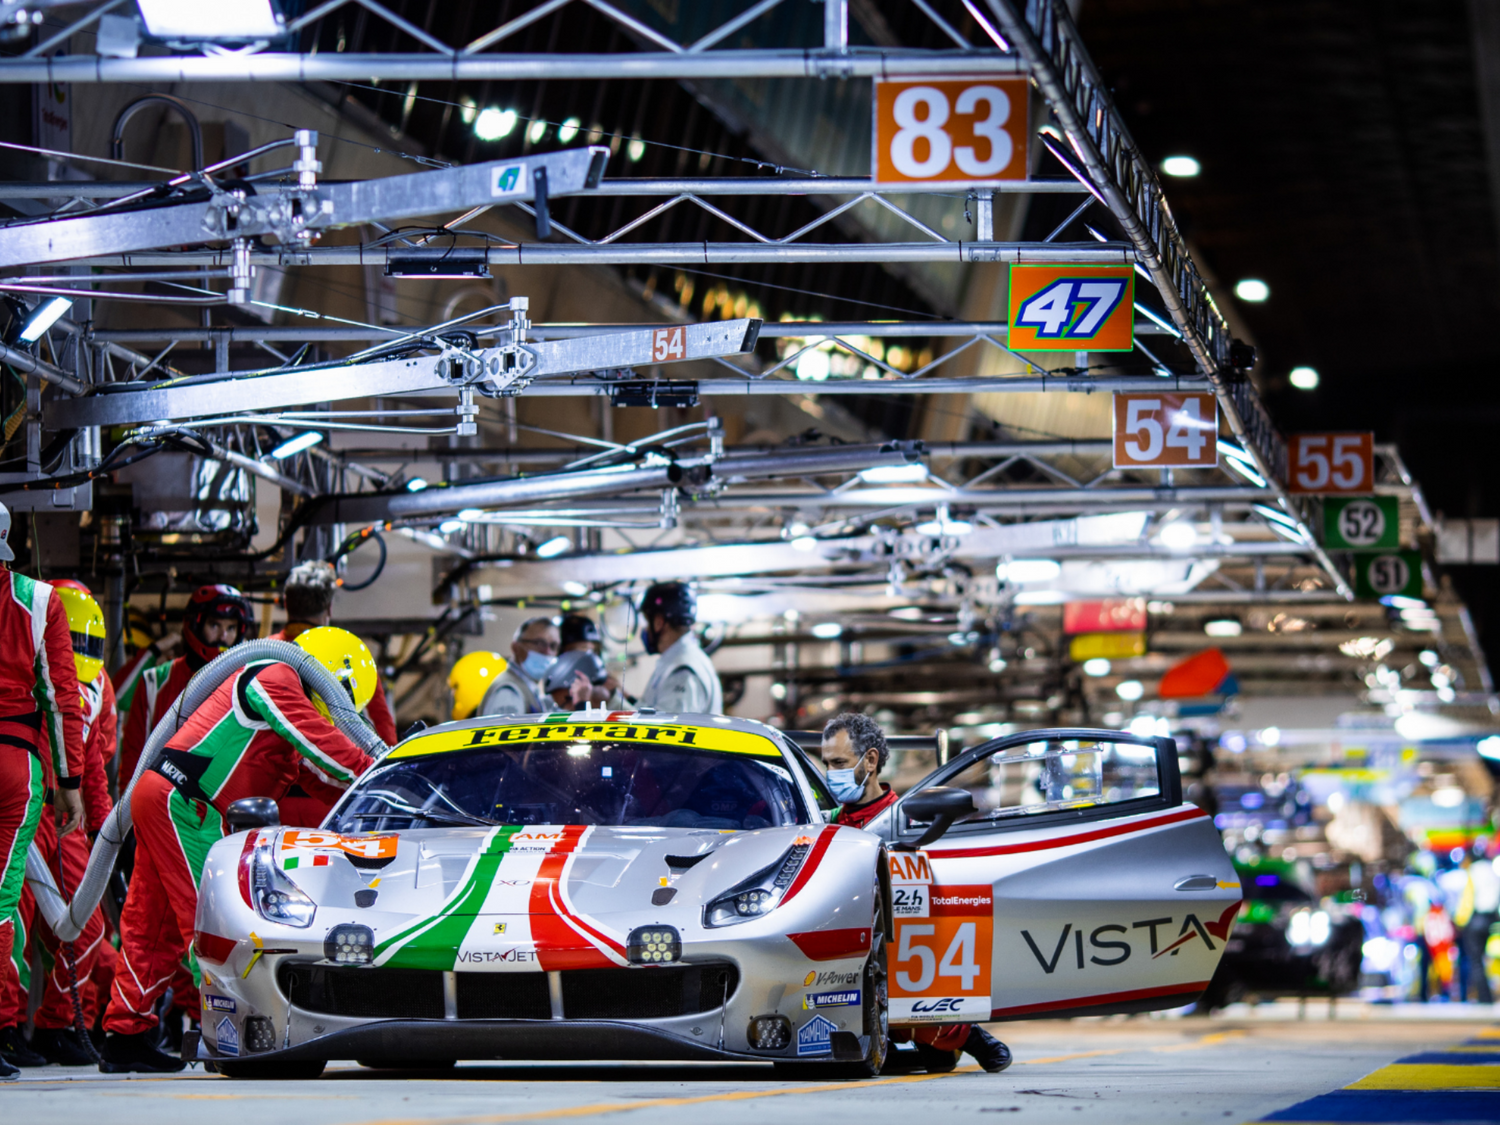 Gagnez vos pass "semaine" pour les 24 Heures du Mans !